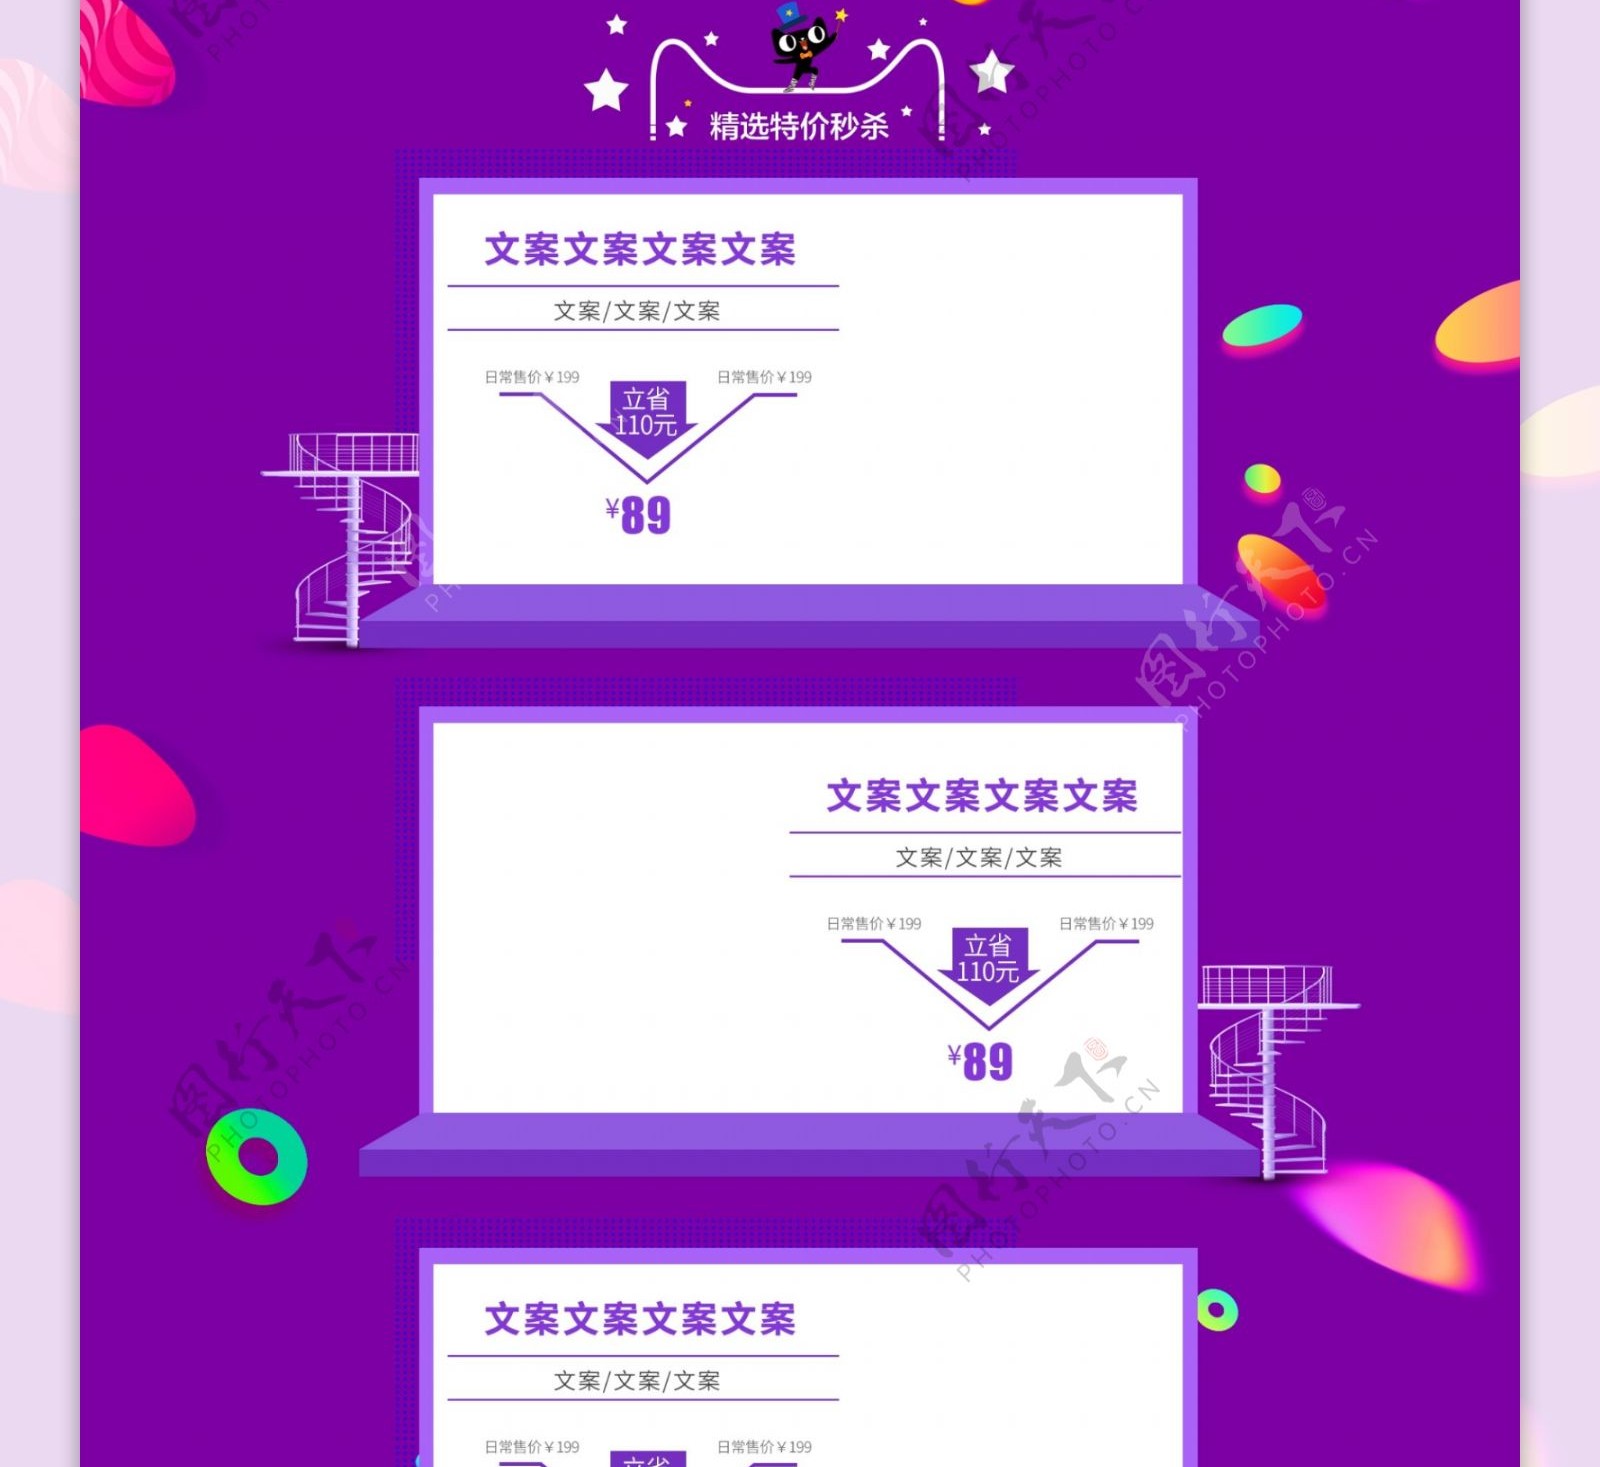 紫色愚人节商品促销淘宝首页